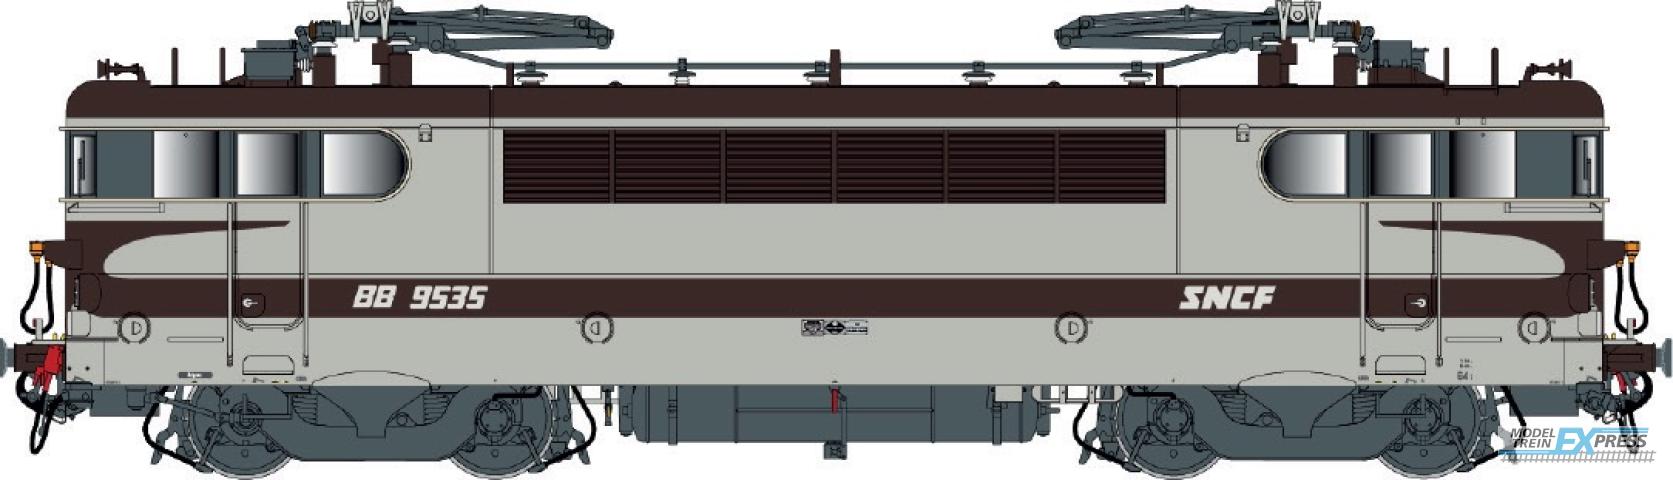 LS Models 10726S BB 9400, grijs/bruin/oranje, Arzens, vet logo  /  Ep. IV-V  /  SNCF  /  HO  /  AC SOUND  /  1 P.